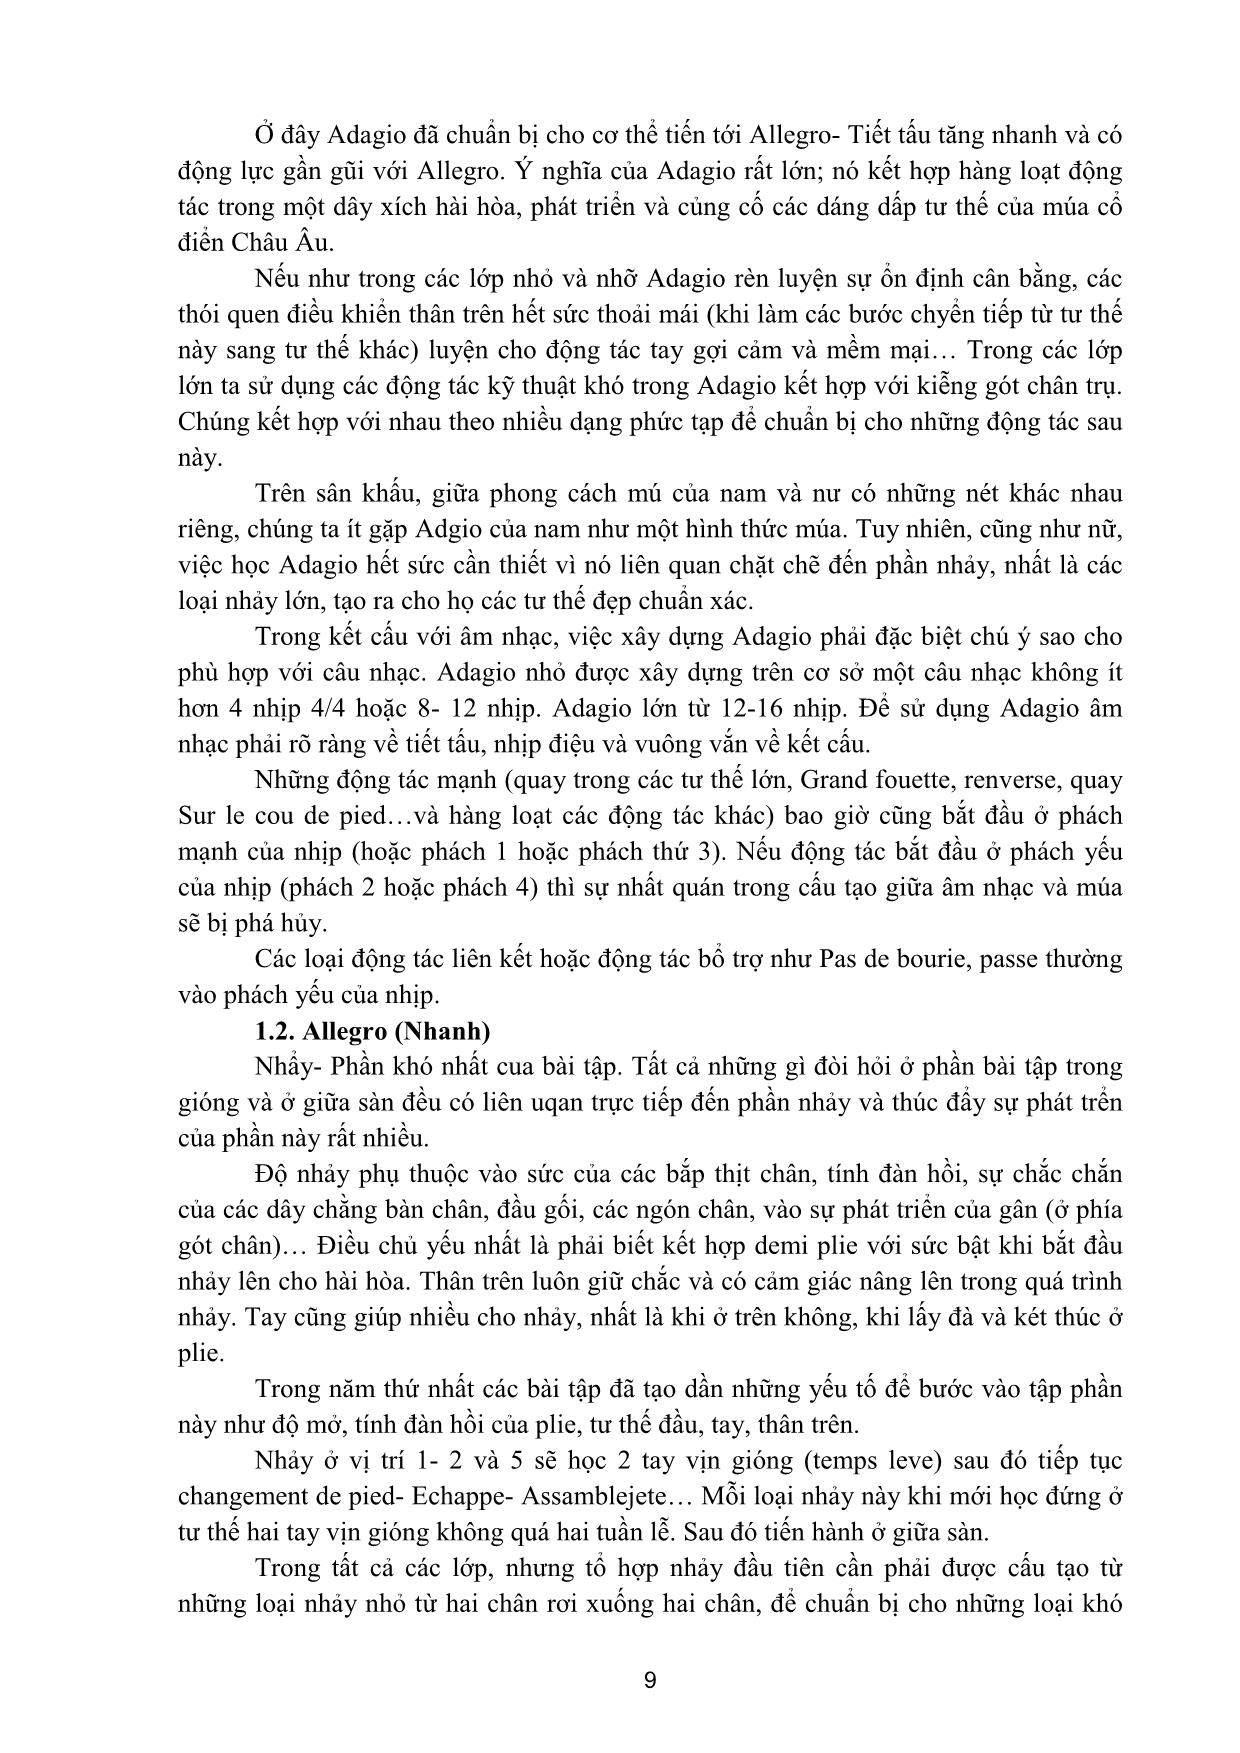 Giáo trình Múa tính cách trang 8